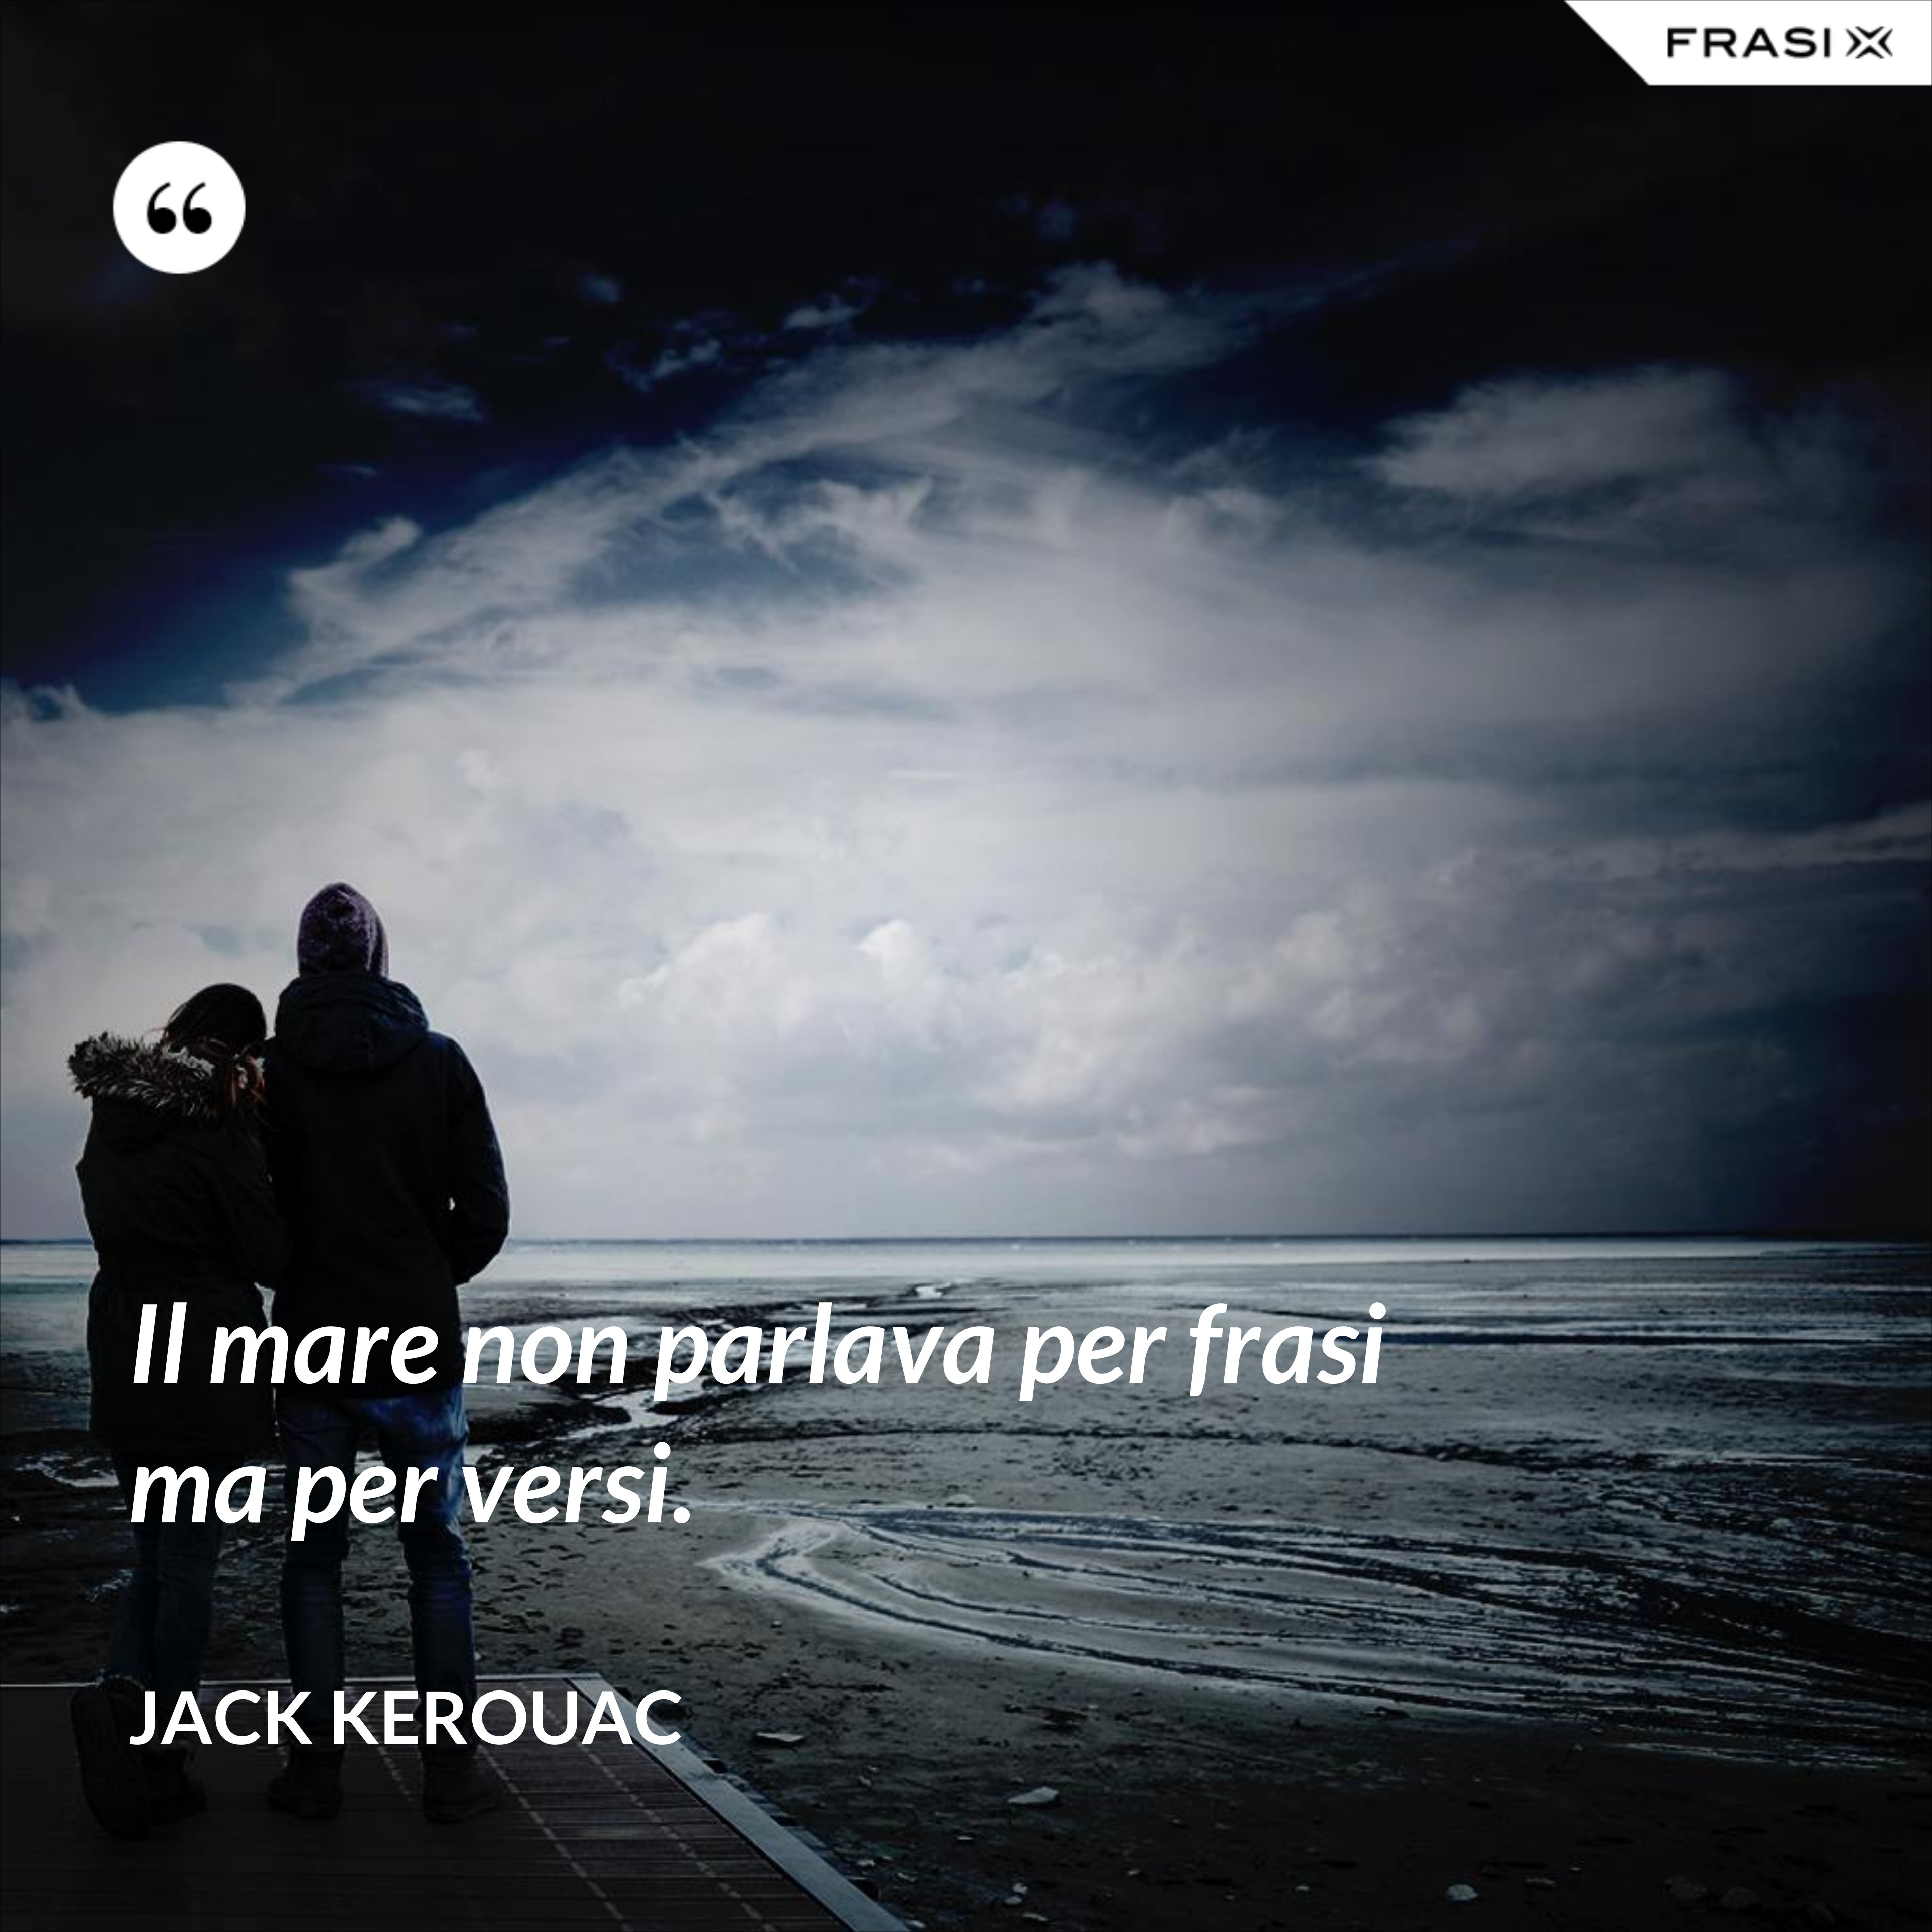 Il mare non parlava per frasi ma per versi. - Jack Kerouac